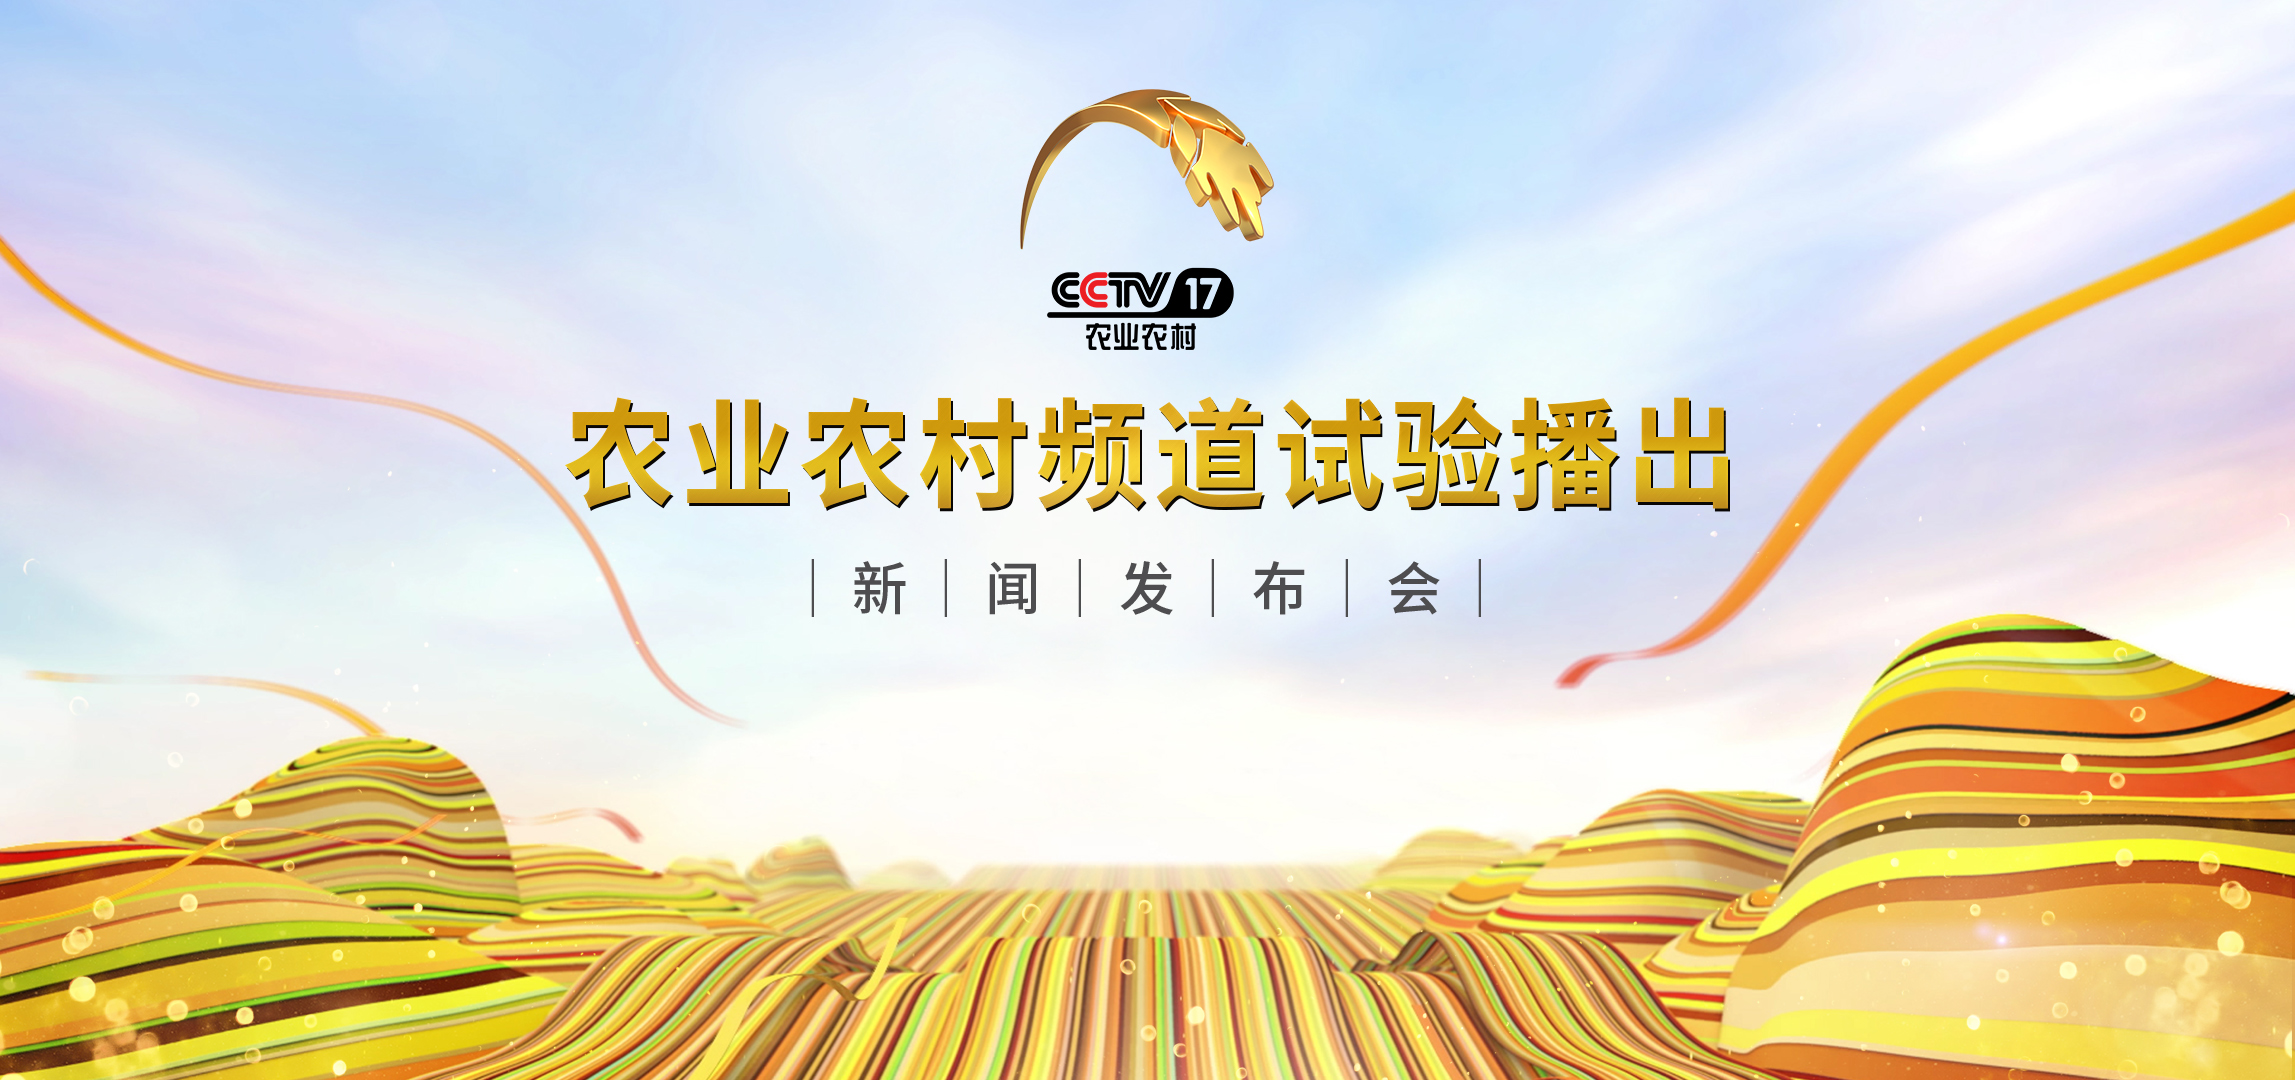 7月29日下午，中央廣播電視總臺CCTV-17農業農村頻道試驗播出發佈會在北京舉行。_fororder_微信圖片_20190729140316